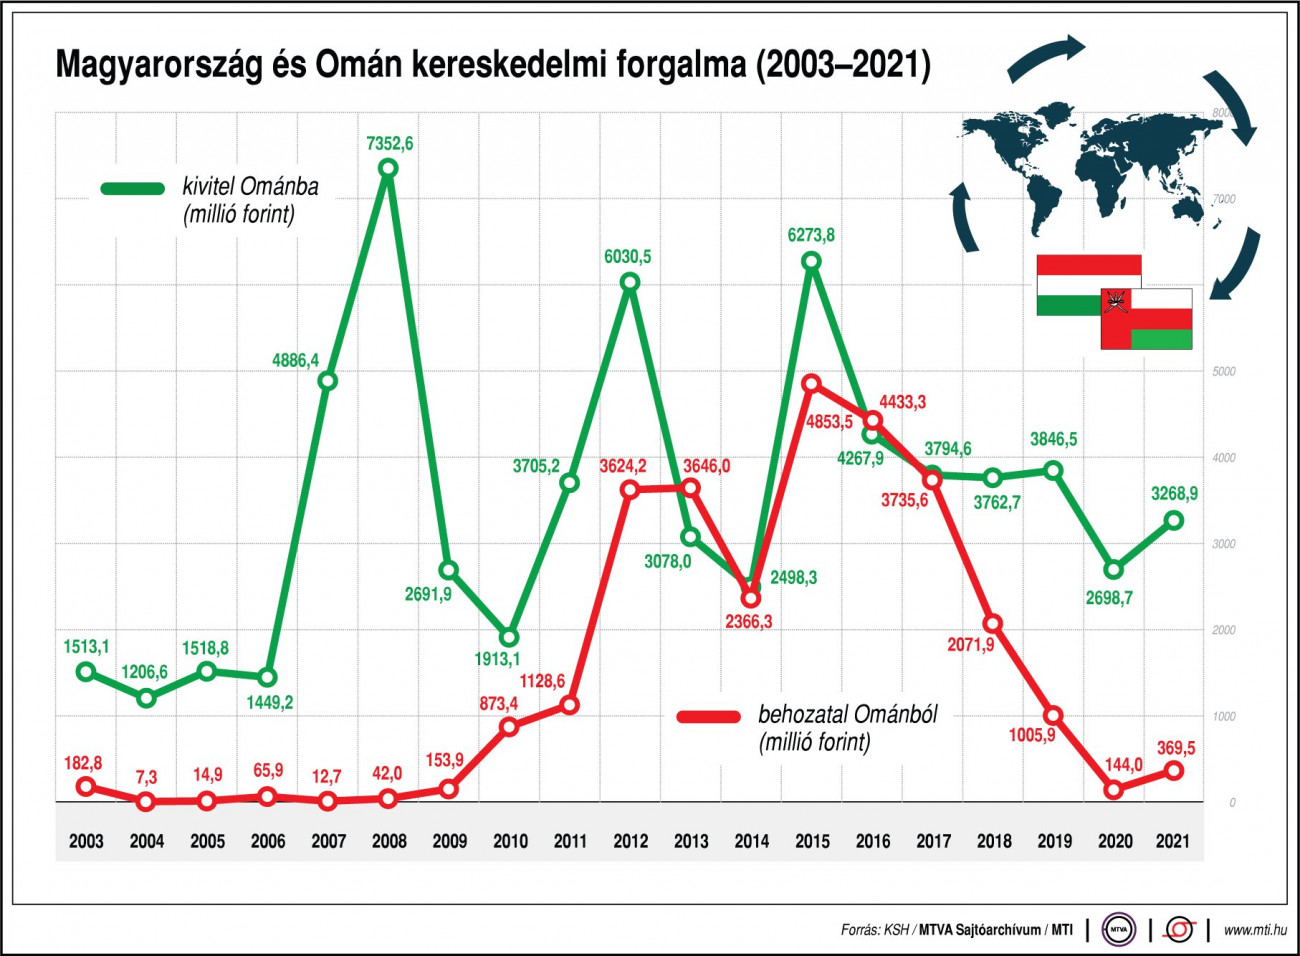 Magyarország és Omán kereskedelmi forgalma (2003-2021)